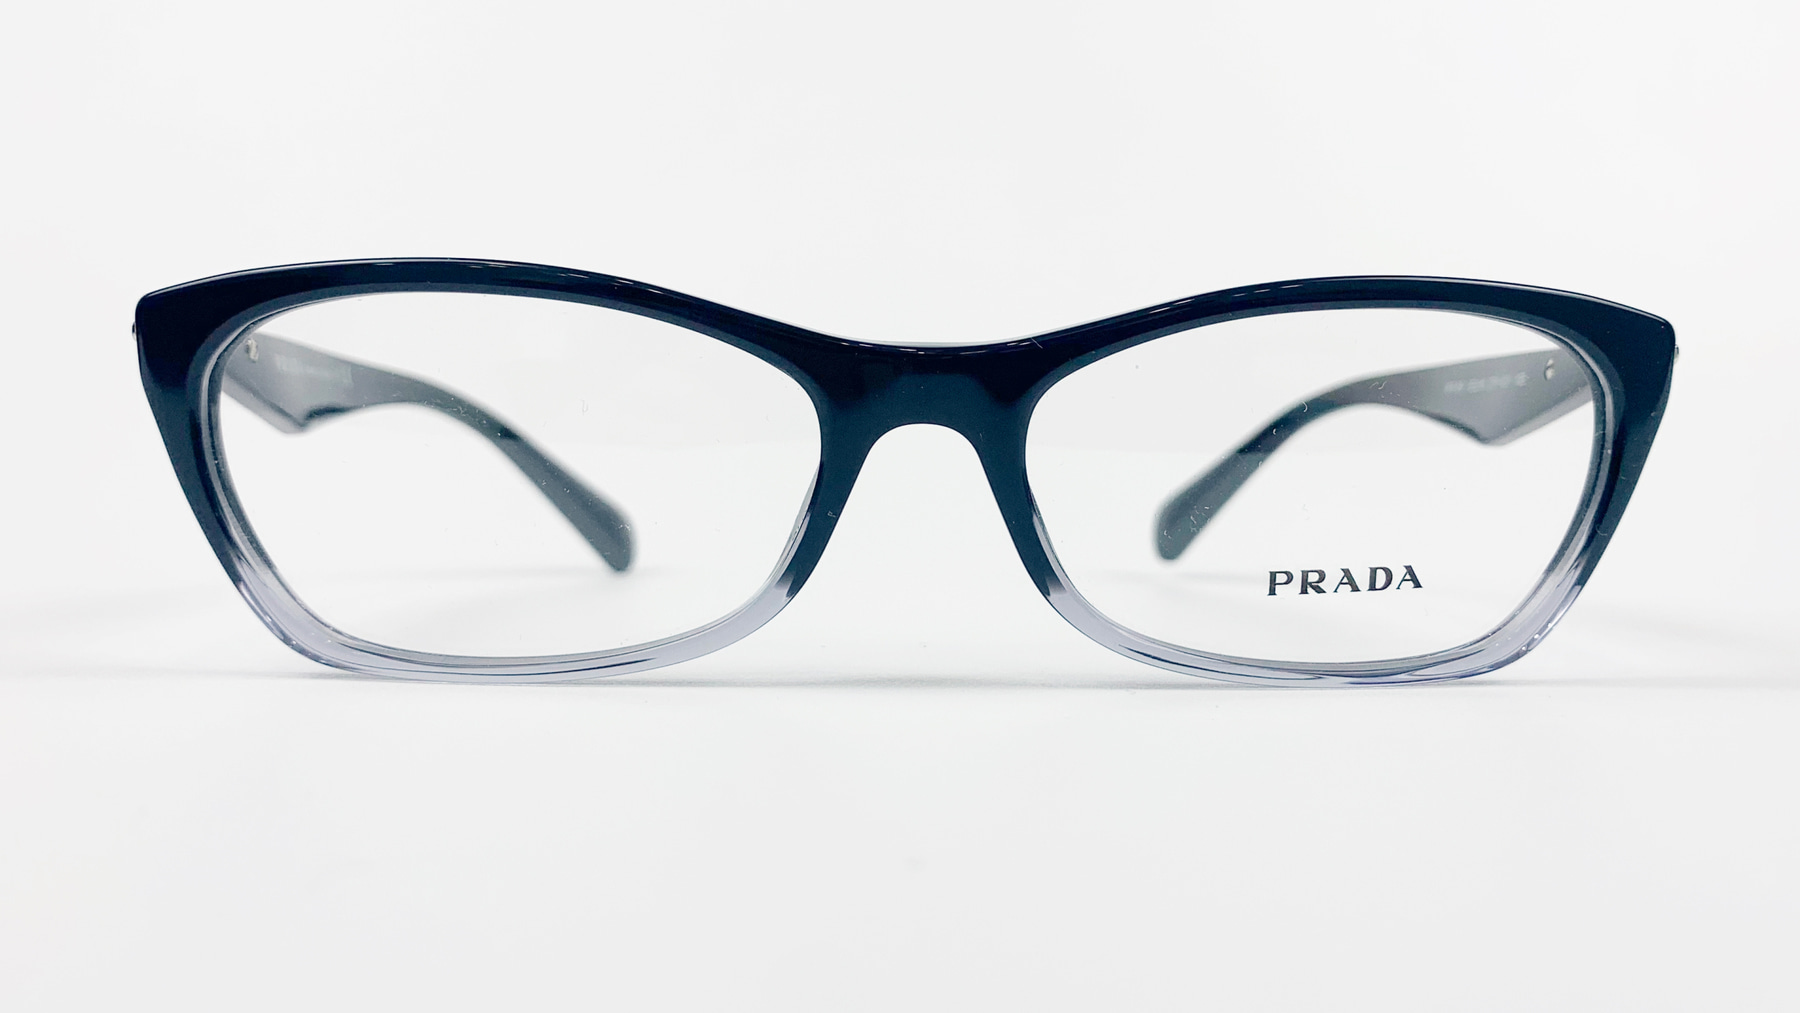 PRADA VPR 15P, Korean glasses, sunglasses, eyeglasses, glasses